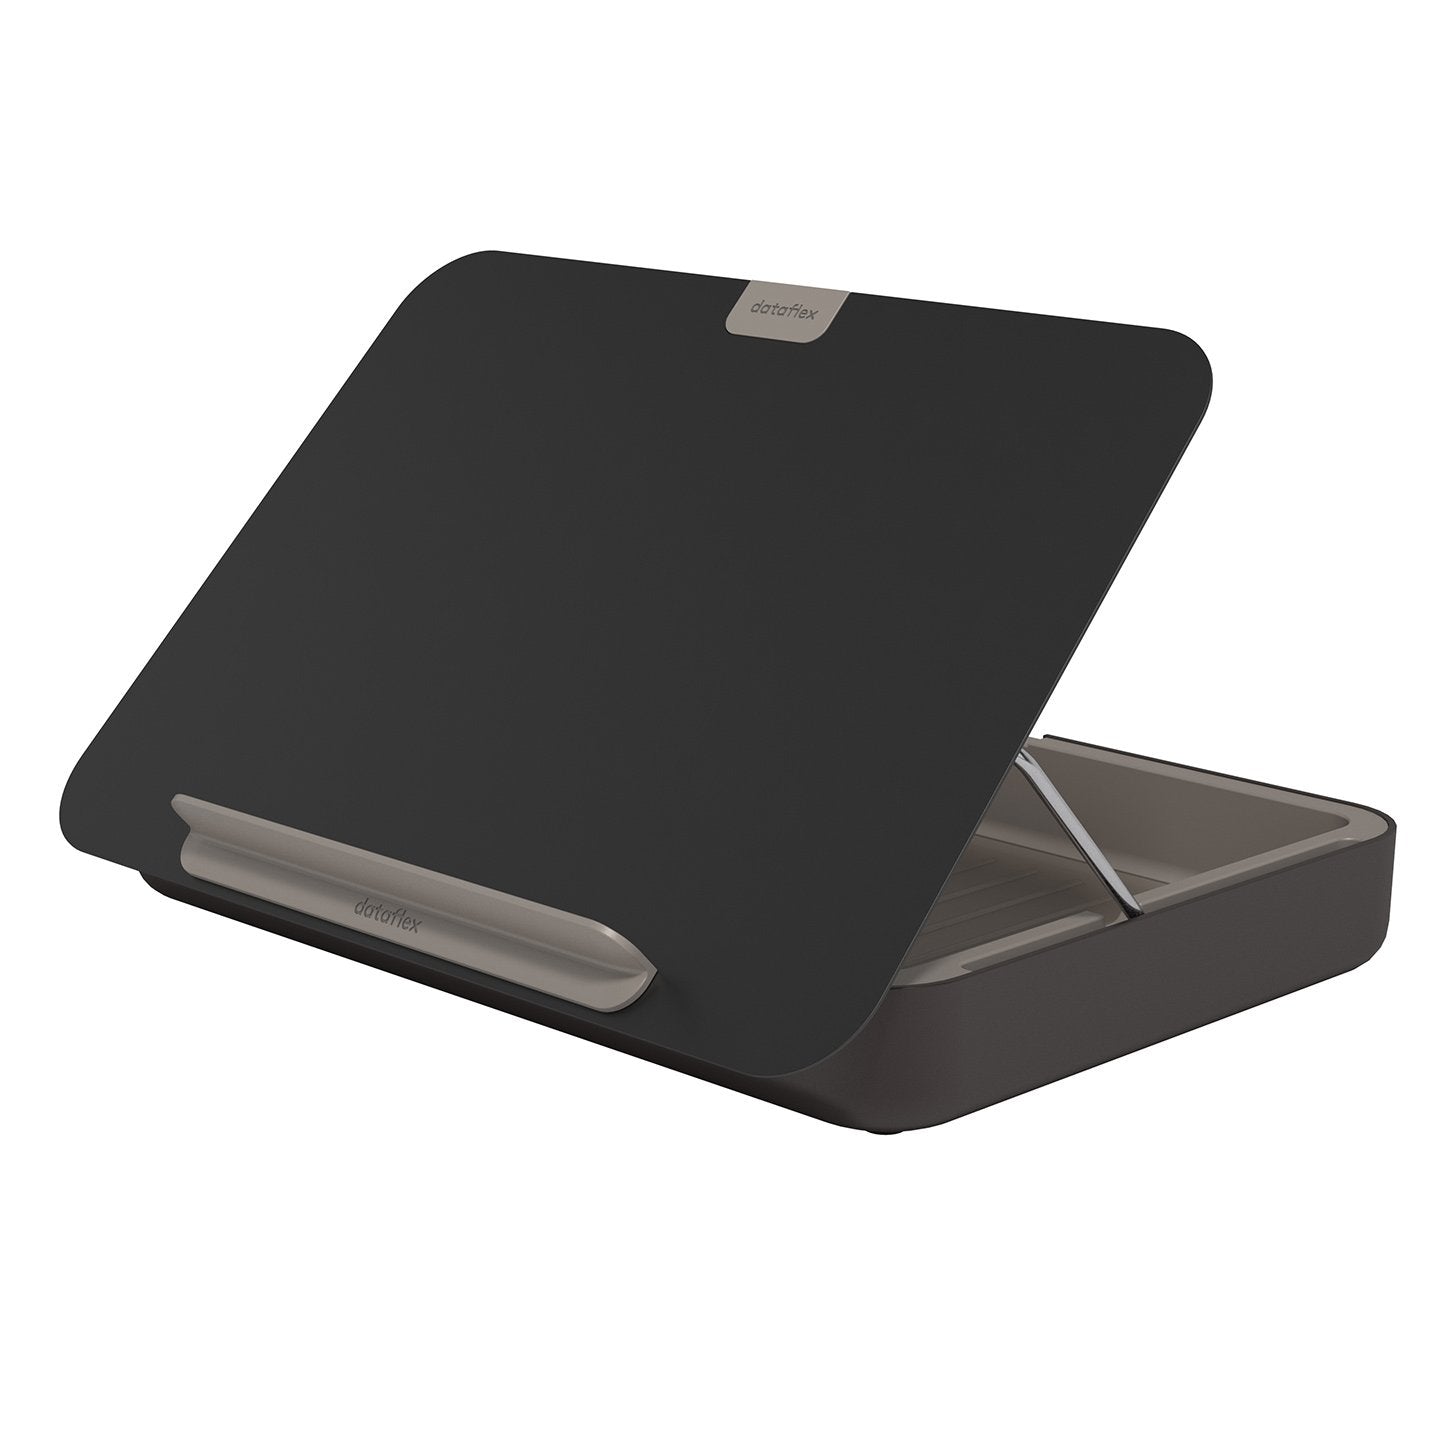 Achteraanzicht zwarte ergonomische toolbox uit de Addit Bento® collectie van Dataflex